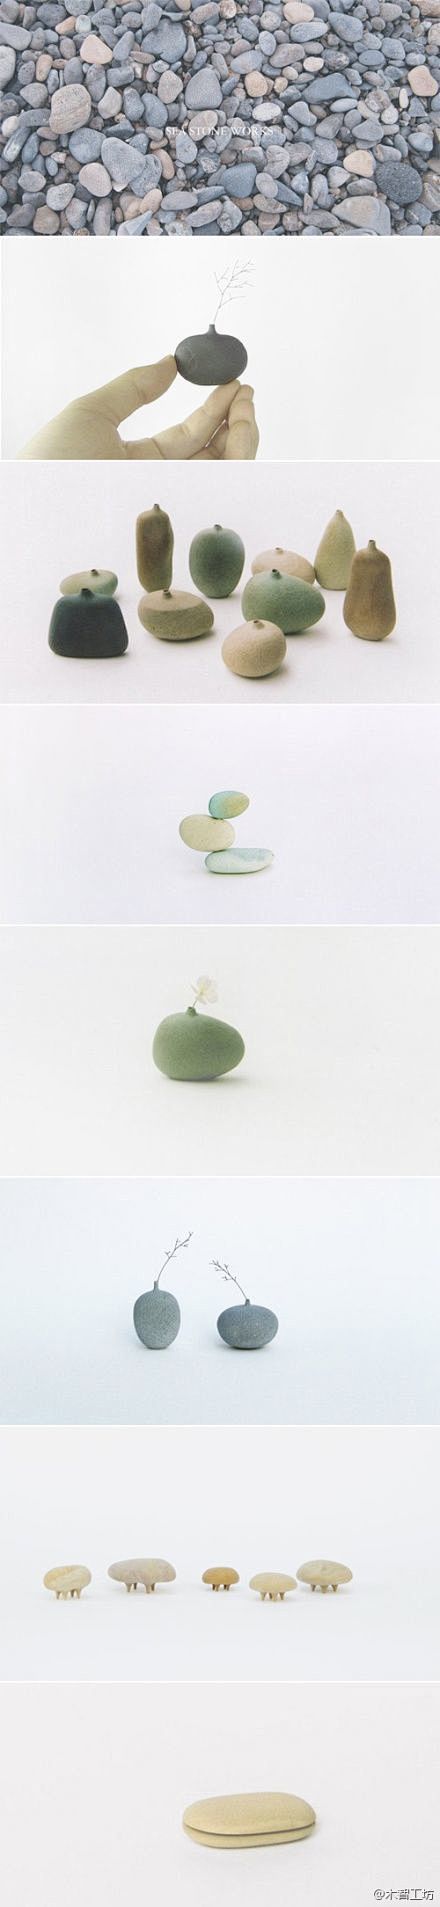 日本设计师古贺充将海边普通的鹅卵石作为创...